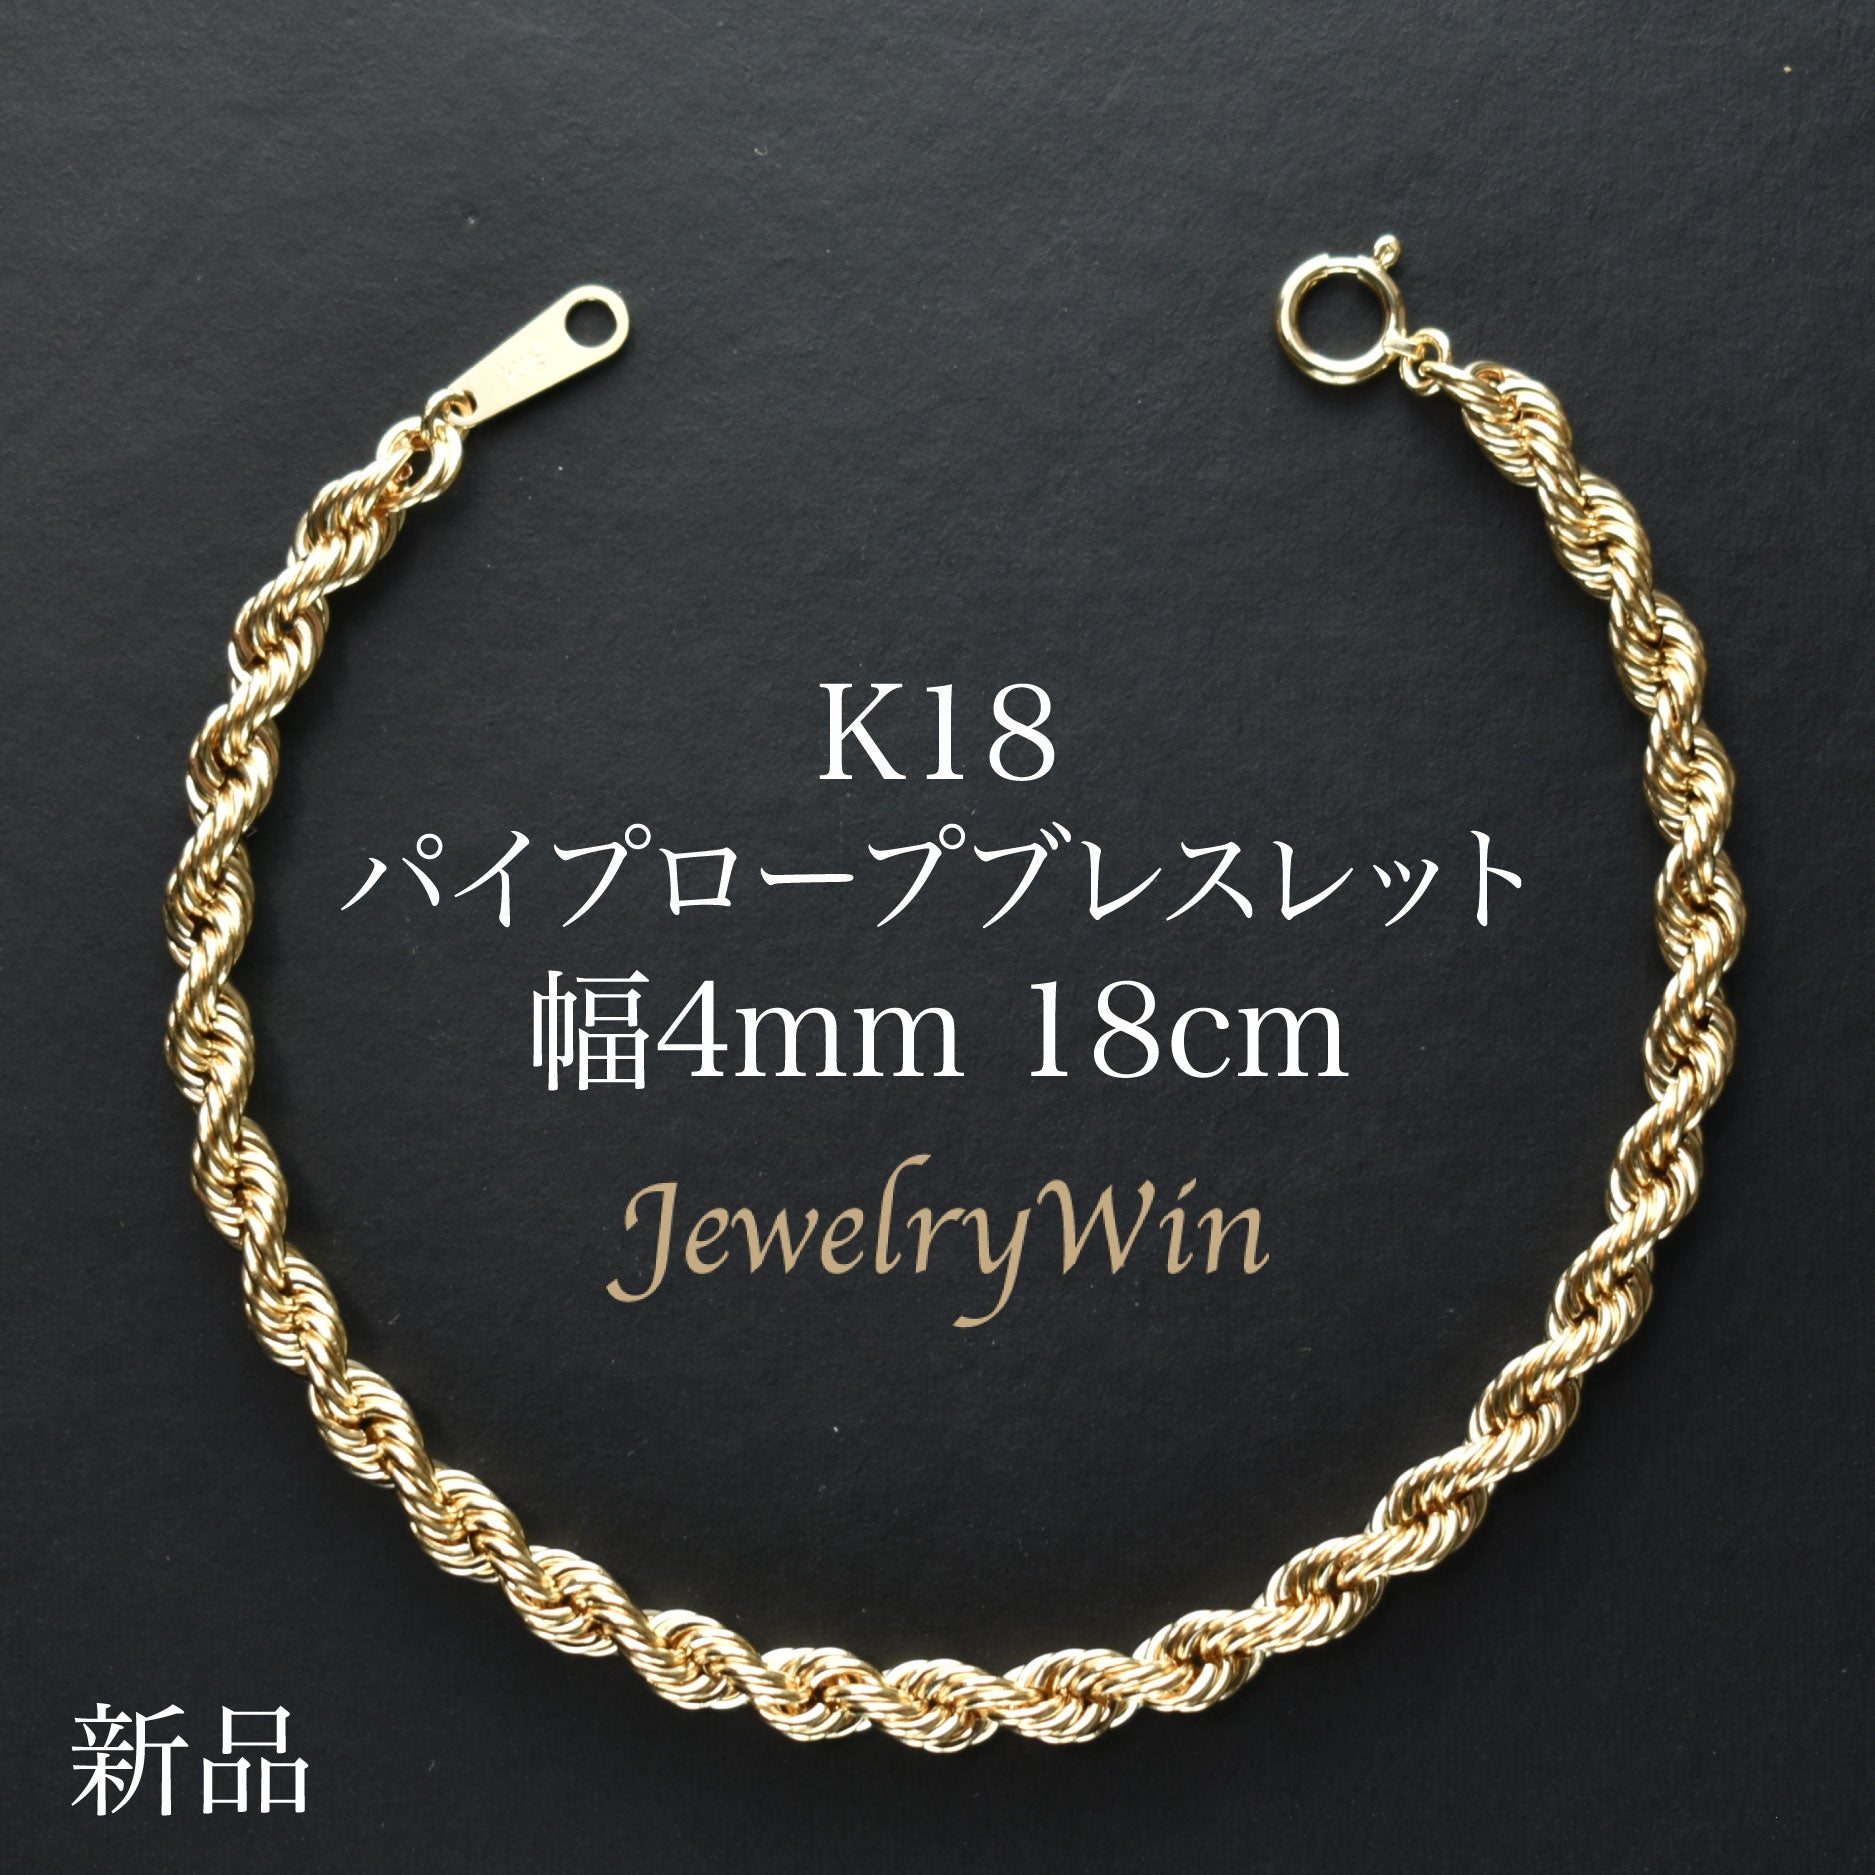 【新品】k18/18金/ゴールド/ロープチェーンブレスレット